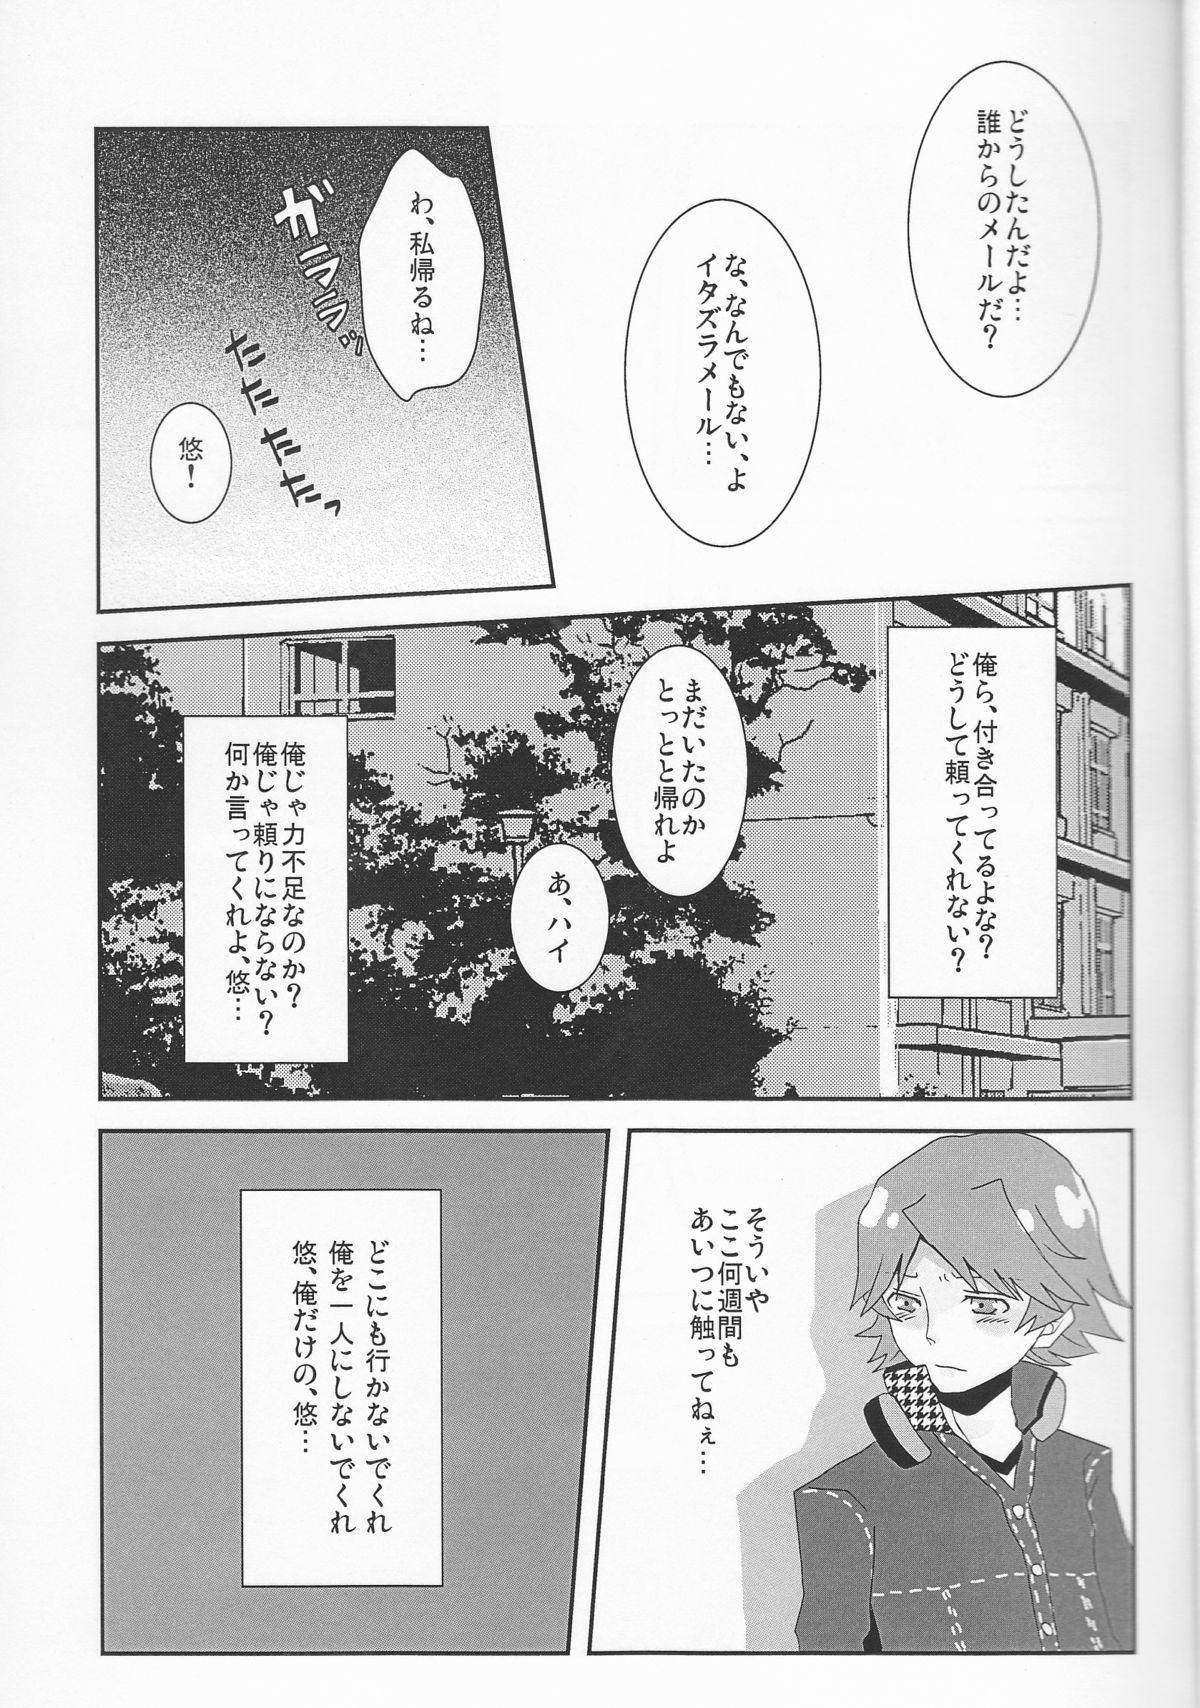 Moaning Kuro - Persona 4 Reverse - Page 7